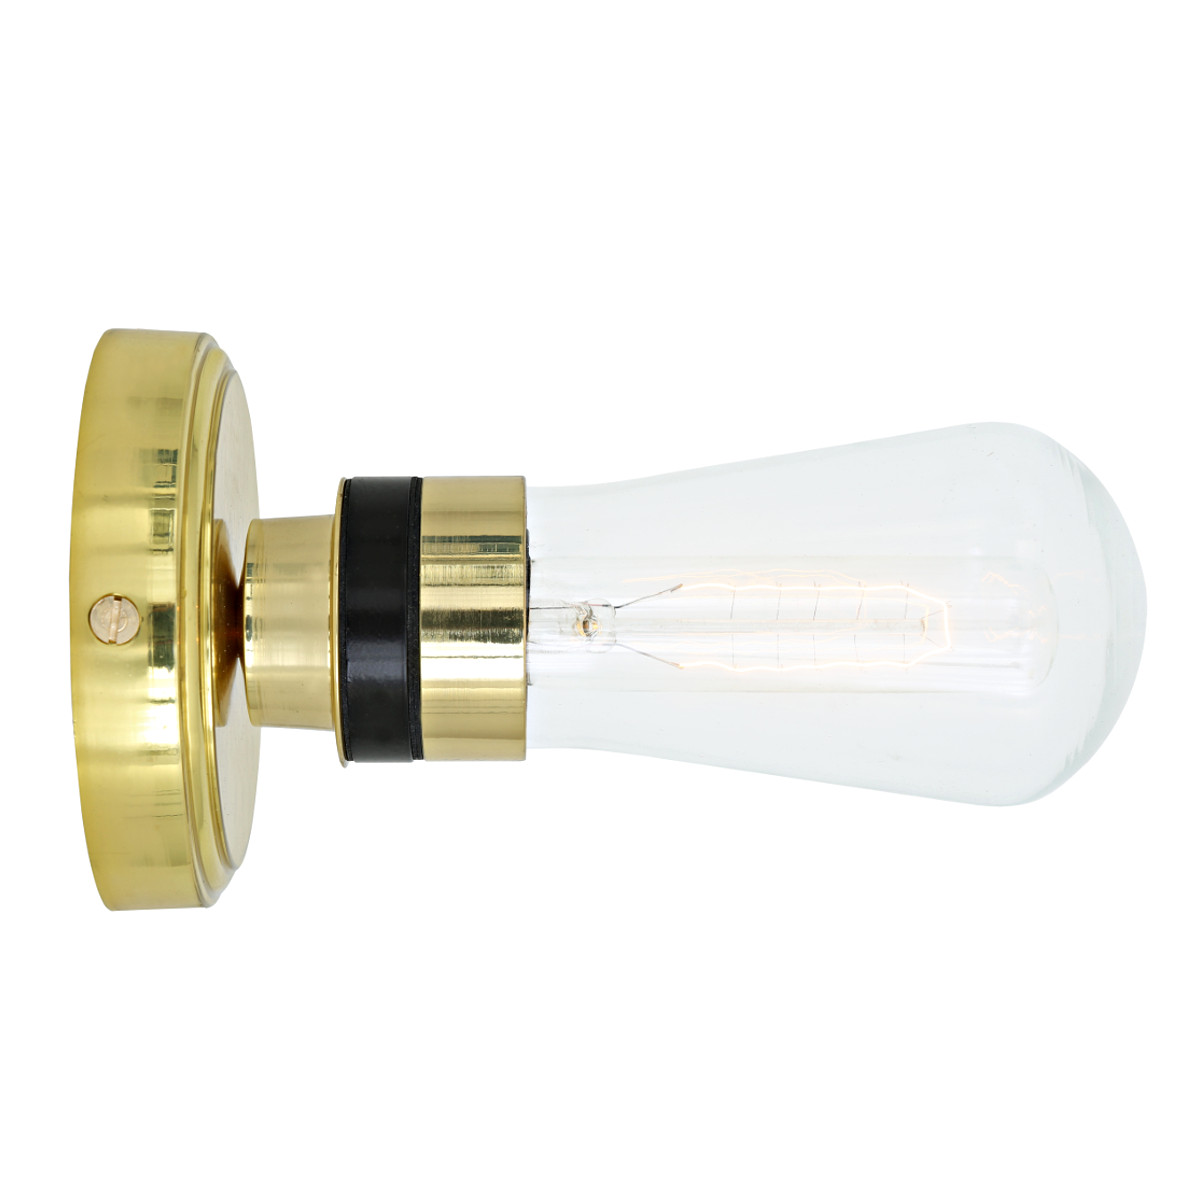 Einfache Badezimmer-Wandlampe mit Glaskolben, IP65: Zeitlose Wirkung in Messing poliert: eine einfache Bad-Wandleuchte mit Glaskolben